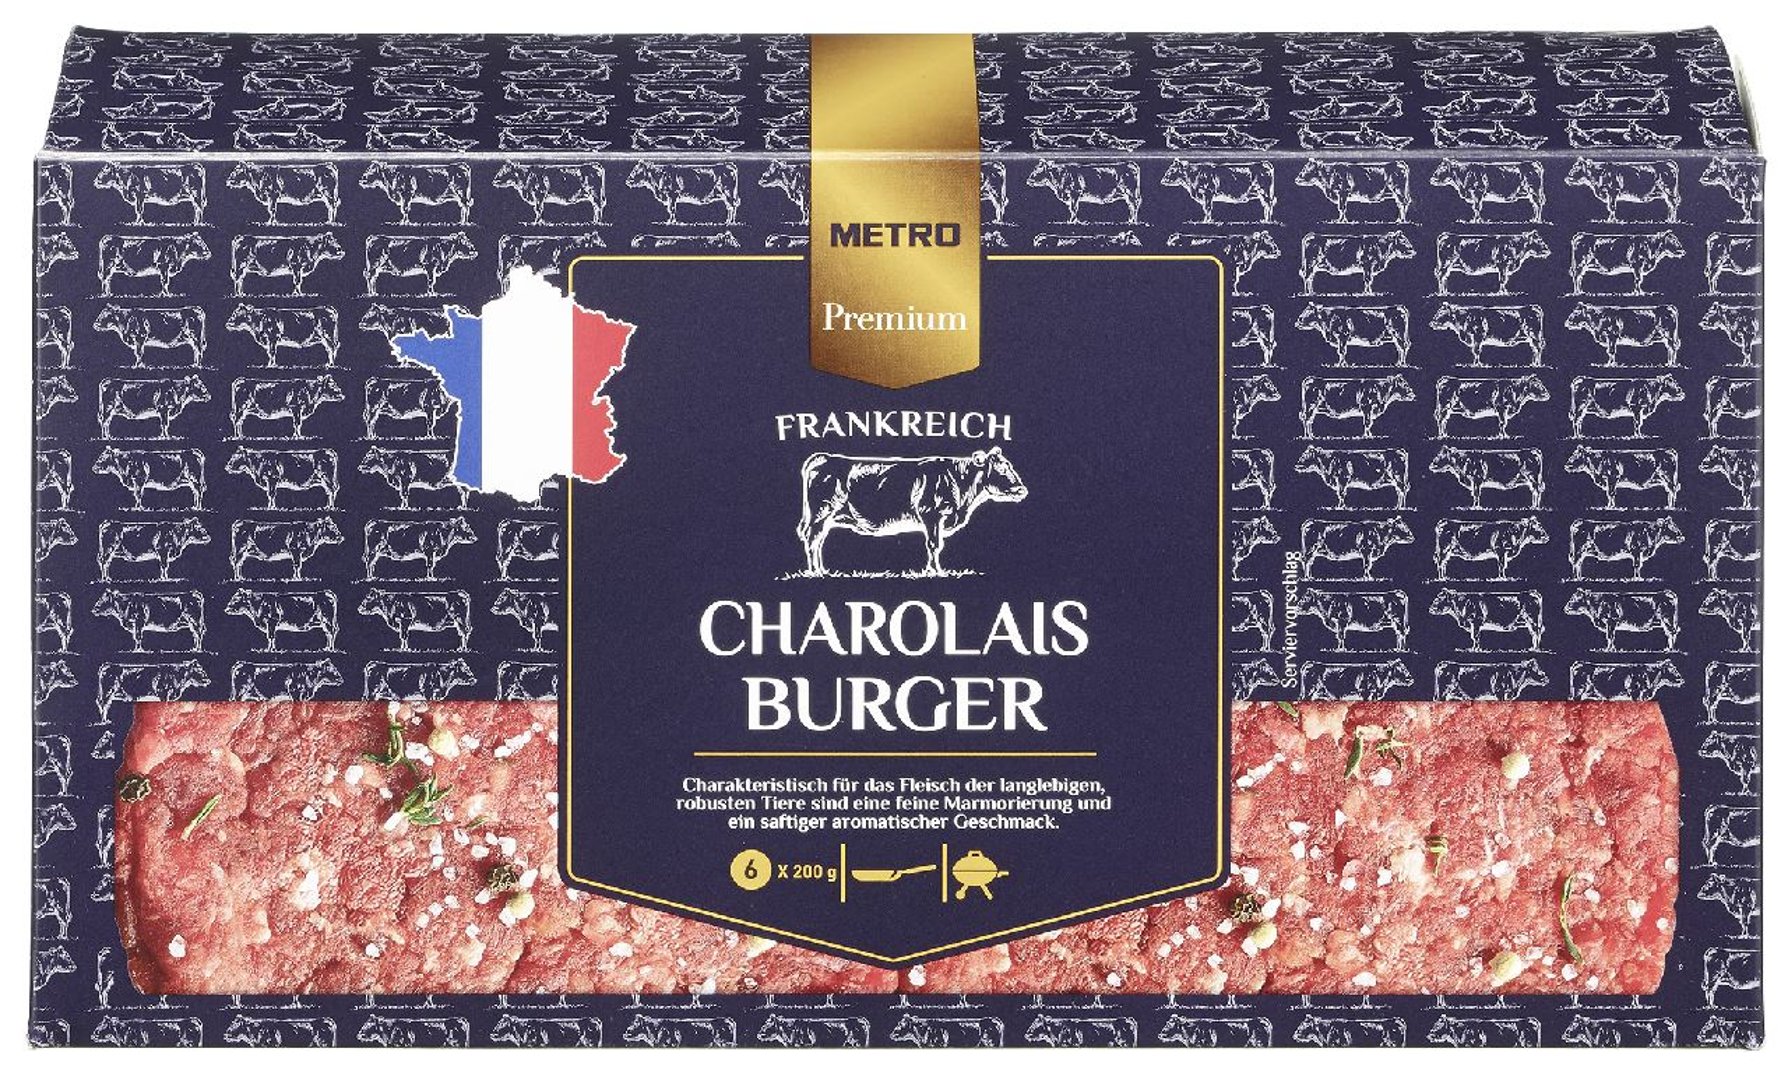 METRO Premium - Charolais Burger tiefgefroren, roh, 6 Stück à 200 g, vak.-verpackt 1,2 kg Packung